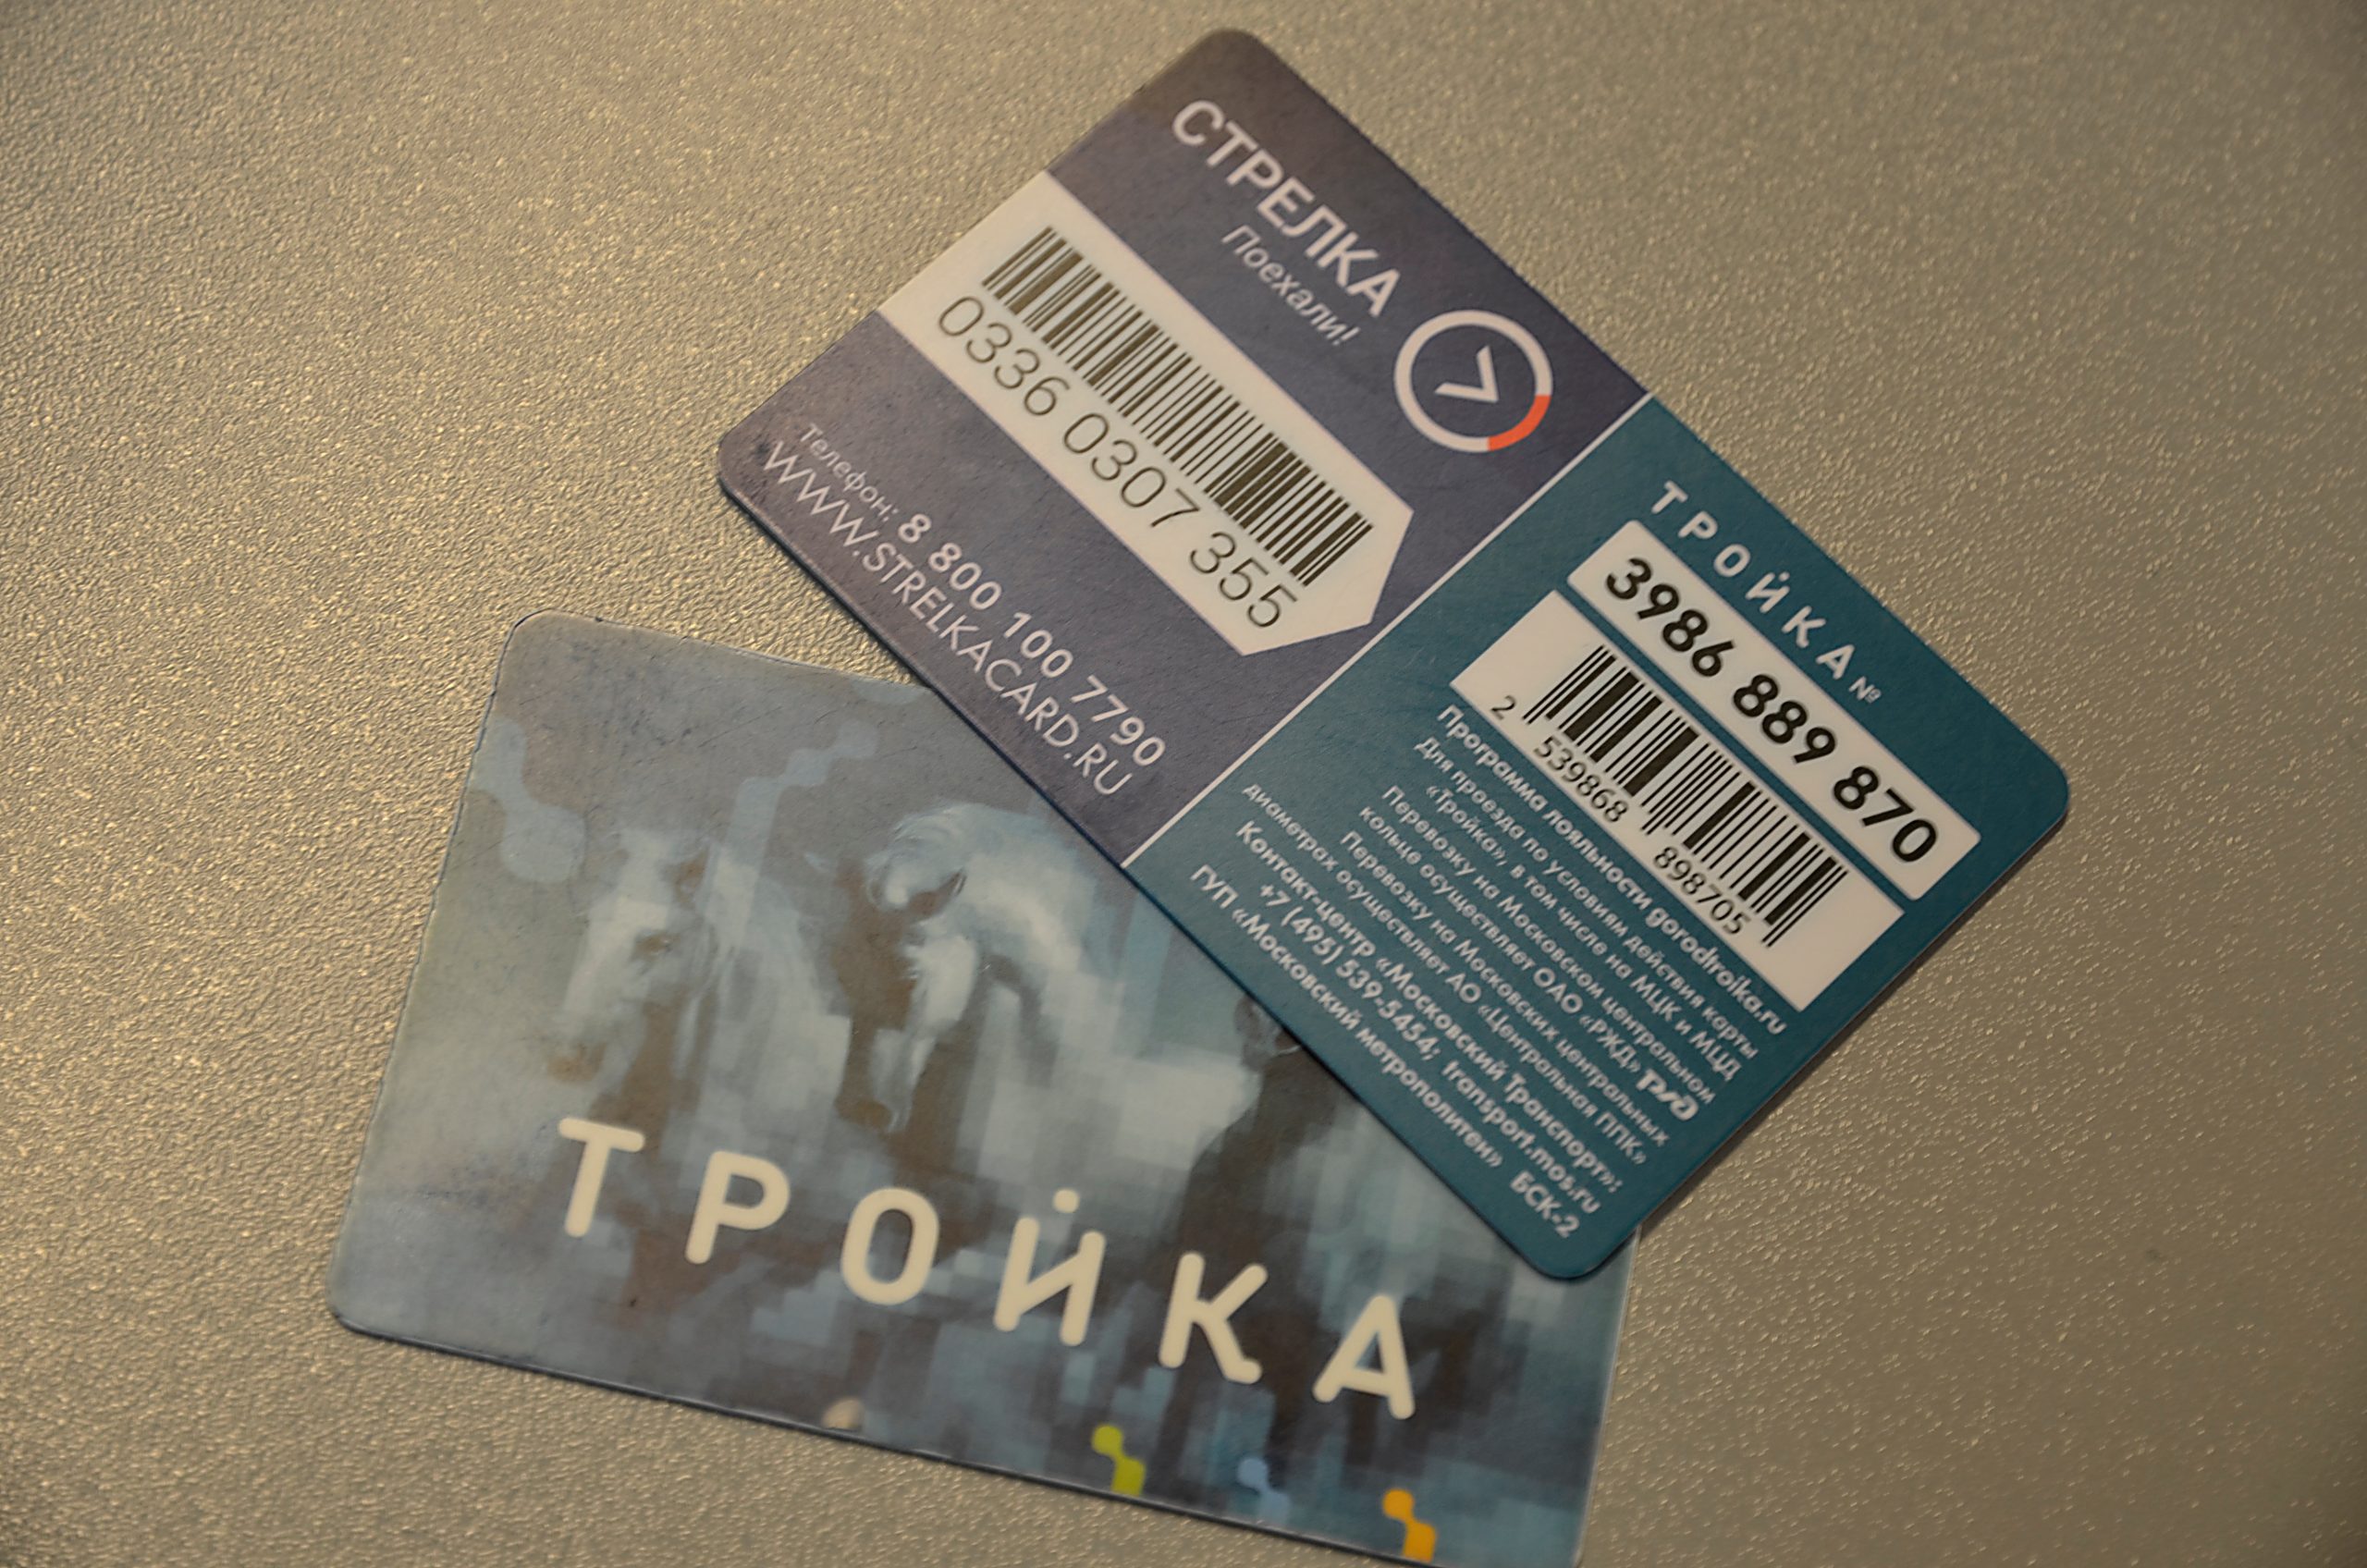 Карты «Тройка» в новом дизайне начали продавать на станциях метро «Маяковская» и «Трубная». Фото: Анна Быкова